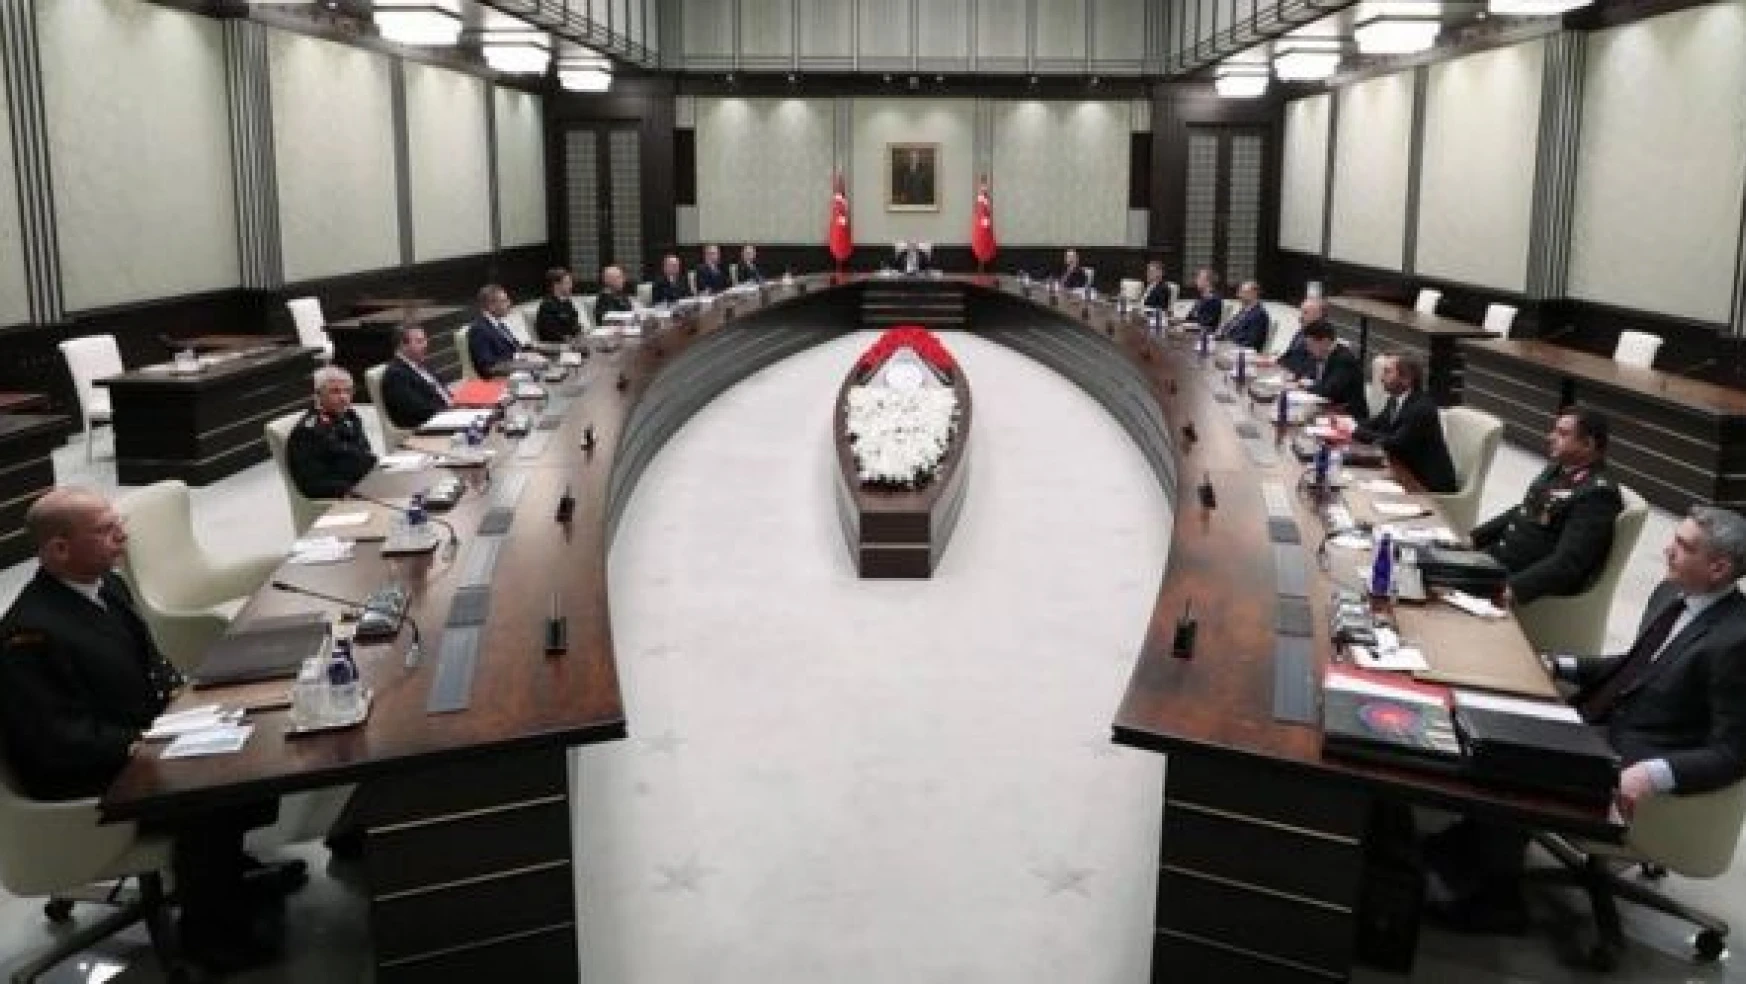 MGK Bildirisi açıklandı: Türkiye Karadeniz'de barış ve istikrarın idamesi için çabalarını sürdürecek